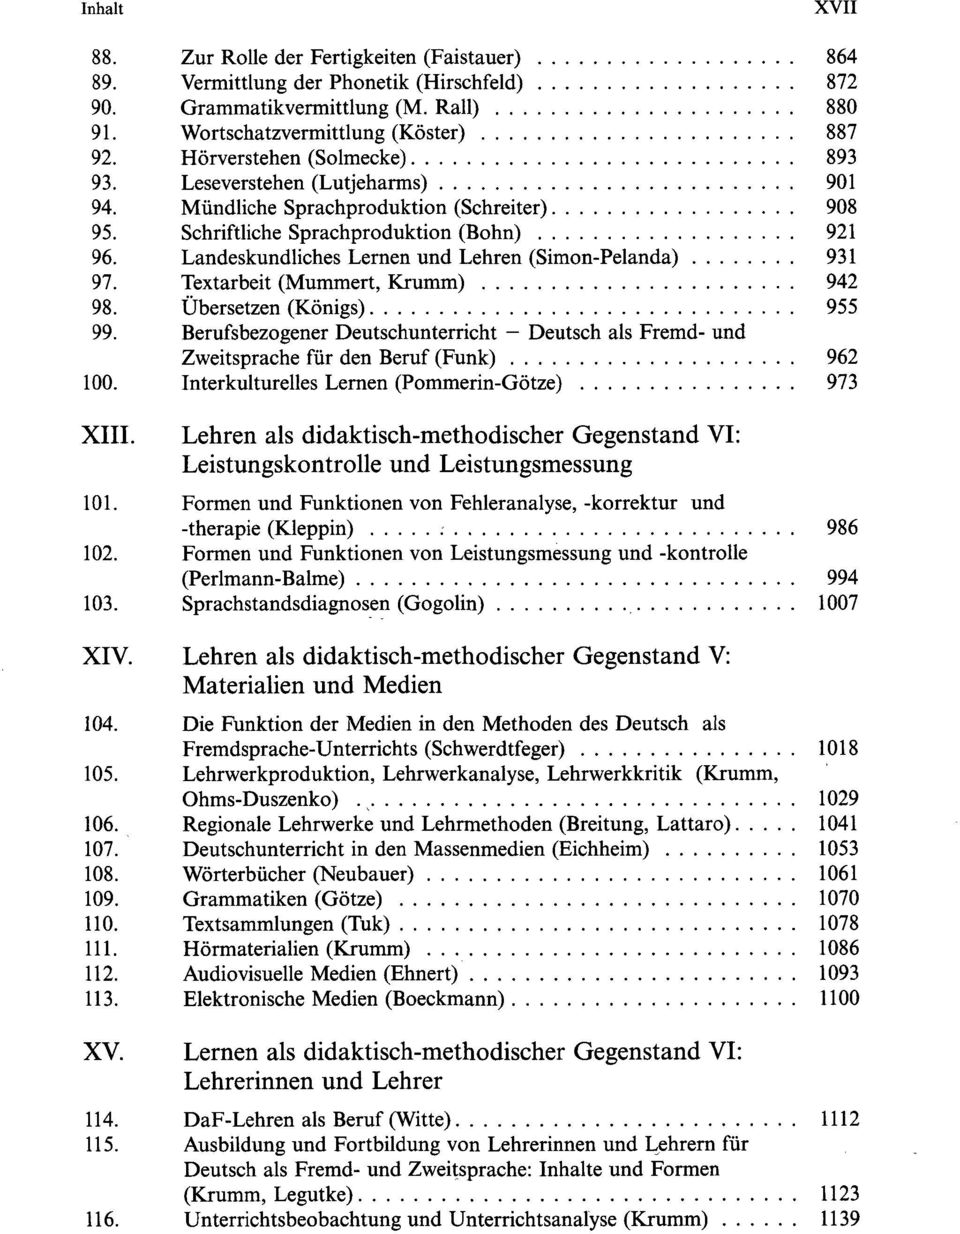 Landeskundliches Lernen und Lehren (Simon-Pelanda) 931 97. Textarbeit (Mummert, Krumm) 942 98. Übersetzen (Königs) 955 99.